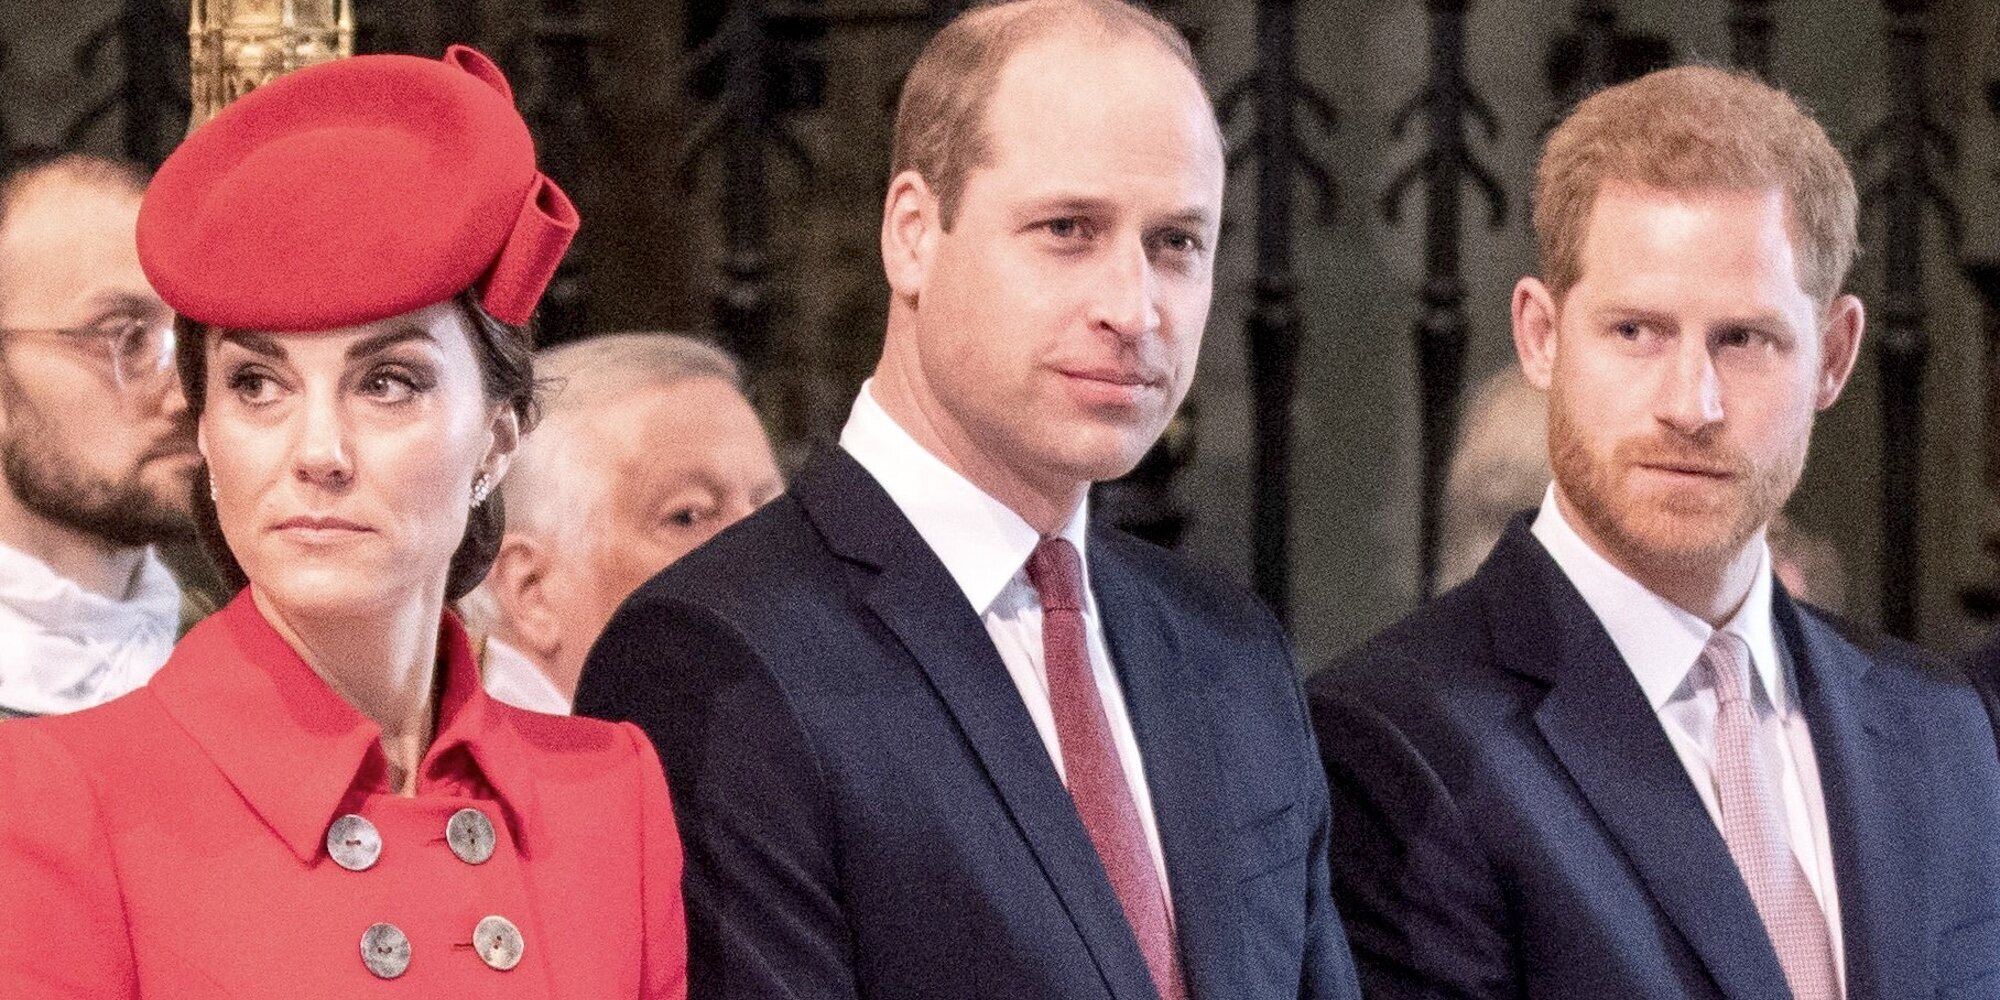 Cae la popularidad de la Familia Real Británica con el Príncipe Guillermo y Kate Middleton y el Príncipe Harry como afectados